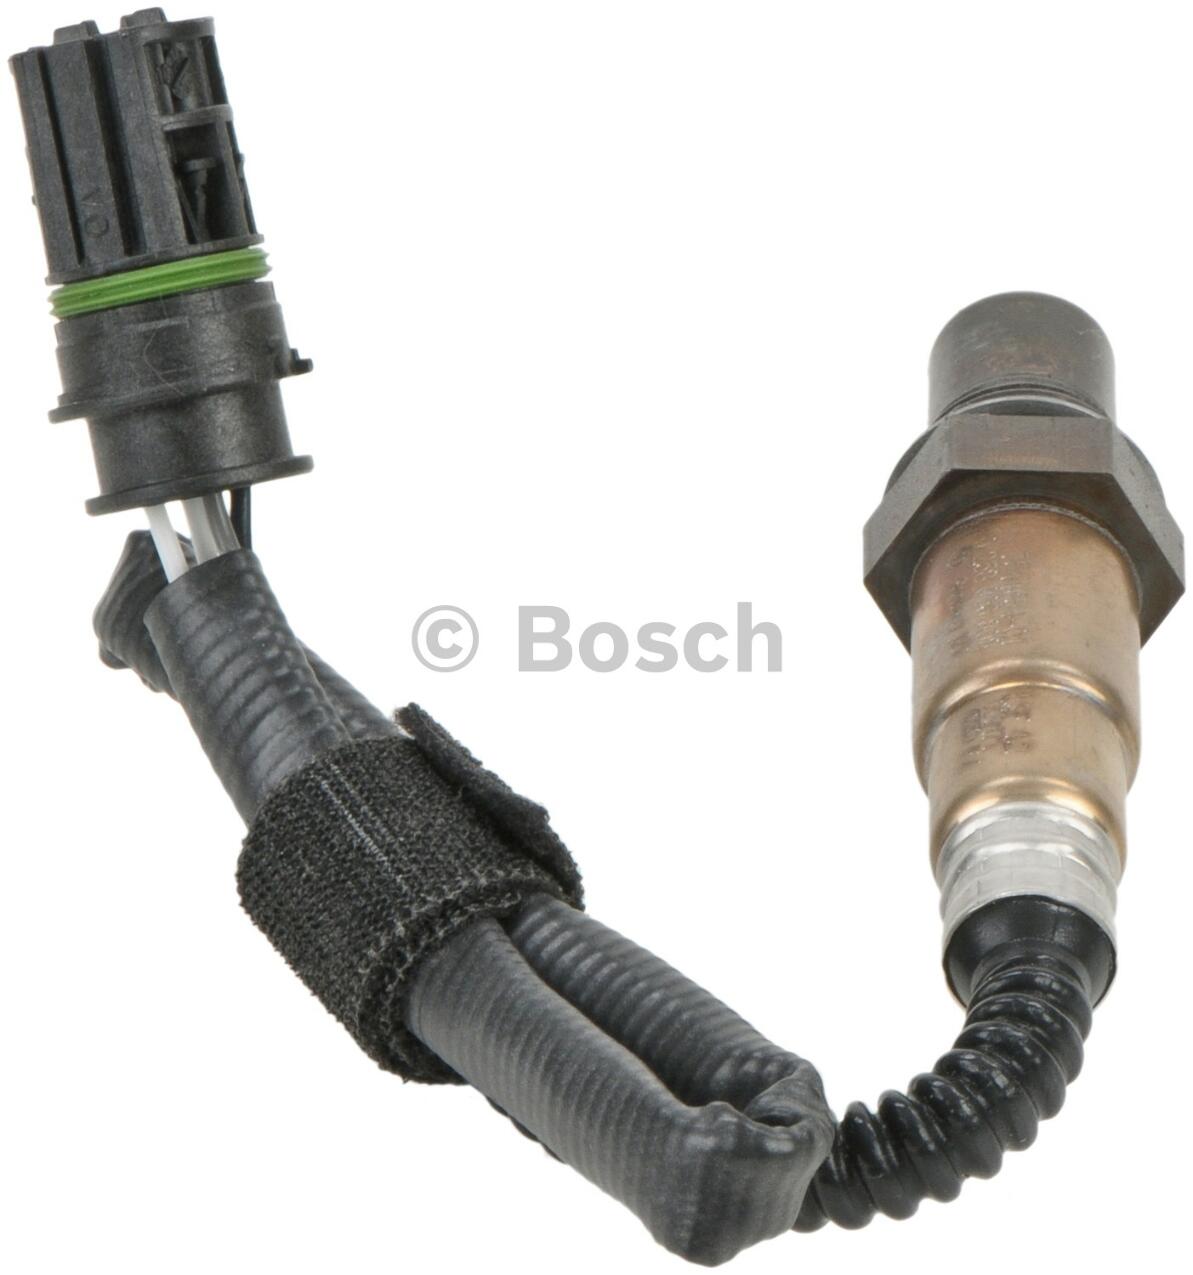 BMW Oxygen Sensor - Rear (Cyl 1-3) 11787544654 - Bosch 16808